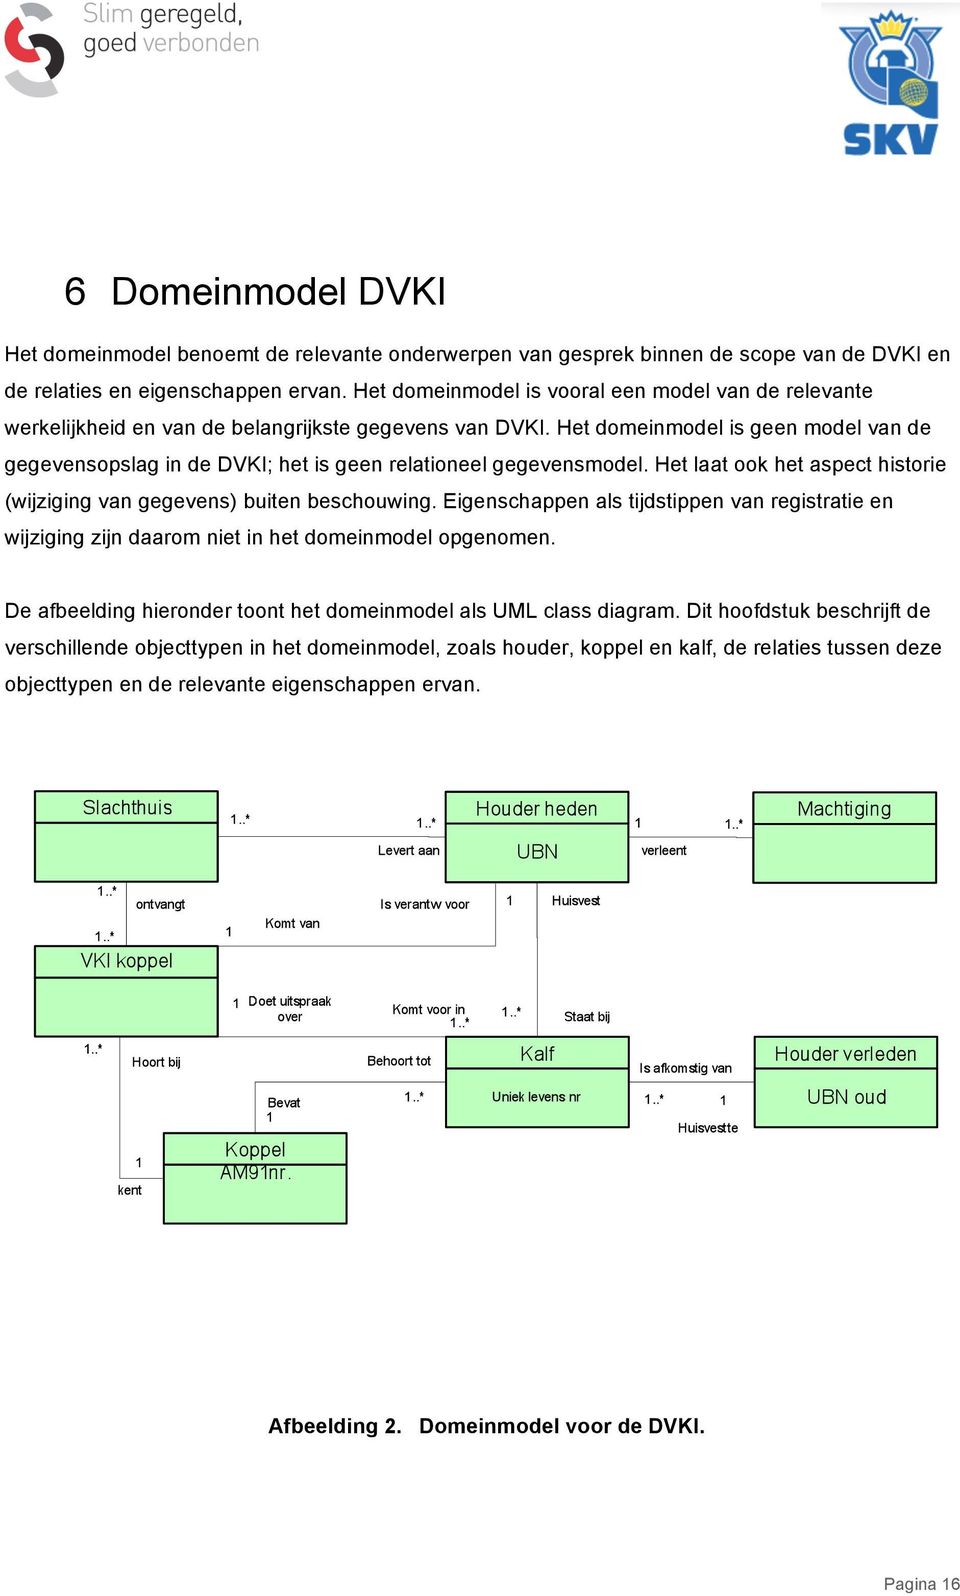 Het domeinmodel is geen model van de gegevensopslag in de DVKI; het is geen relationeel gegevensmodel. Het laat ook het aspect historie (wijziging van gegevens) buiten beschouwing.